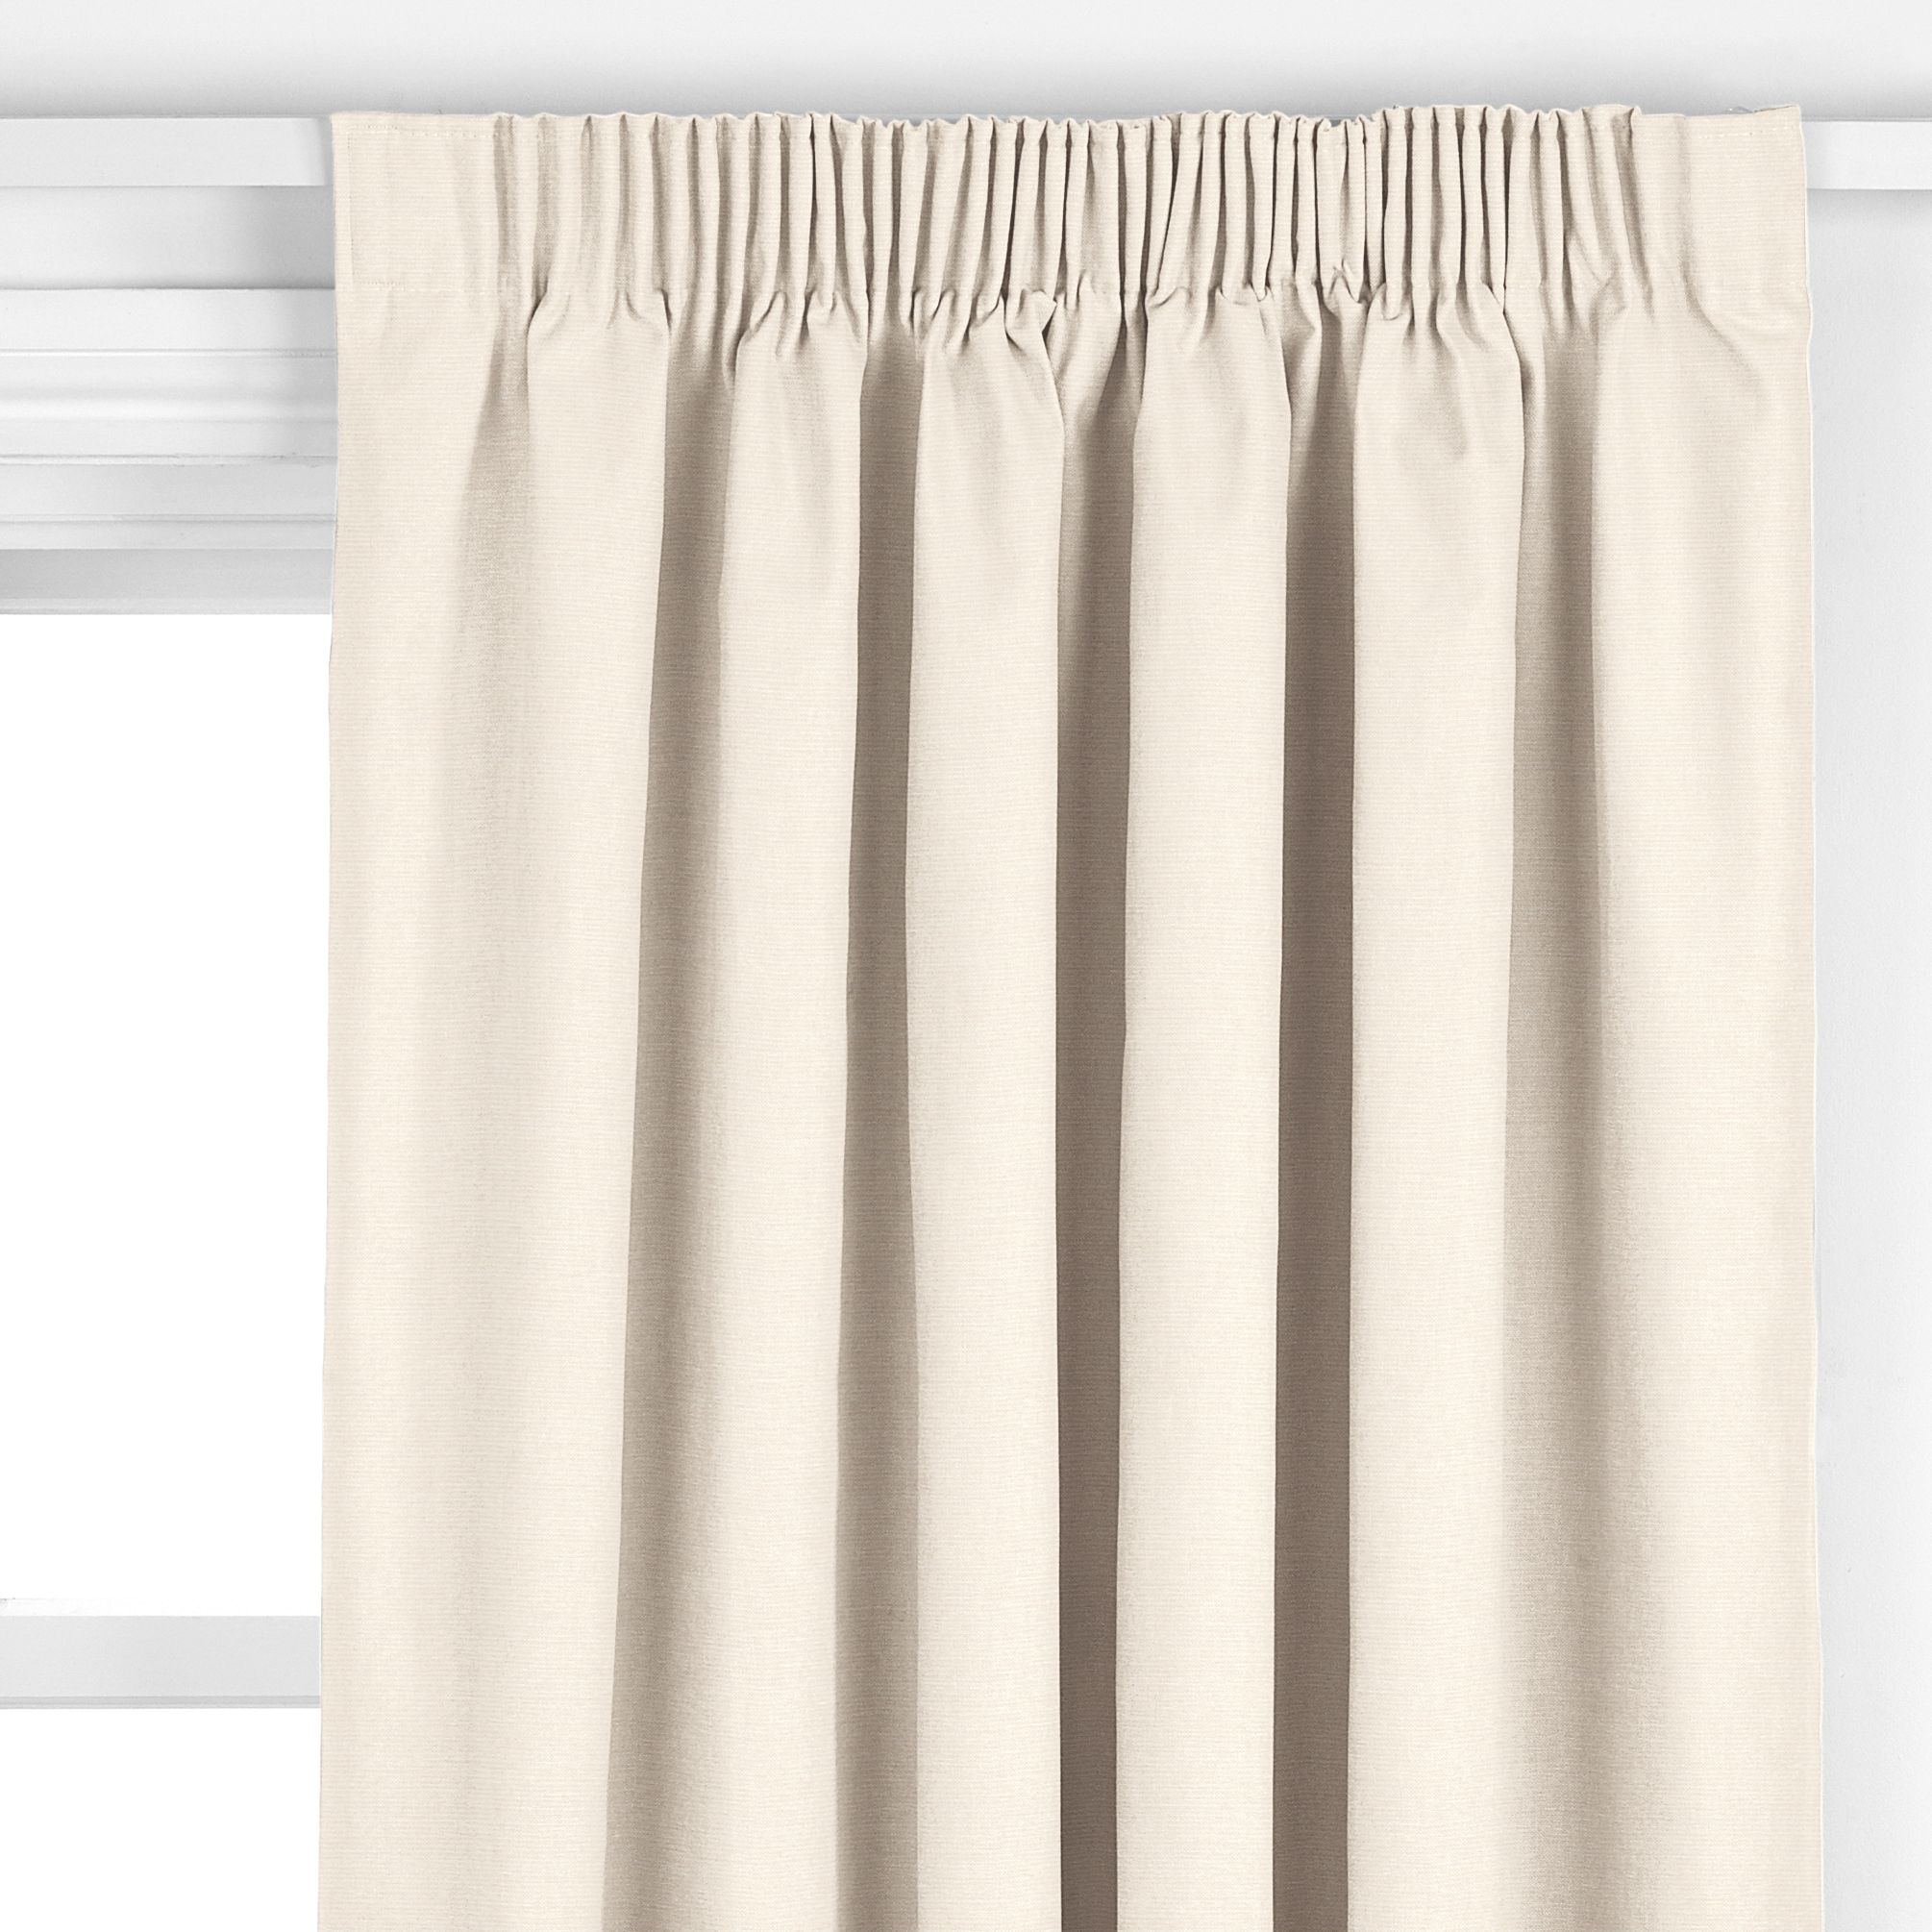 Riviera Pencil Pleat Curtains, Cream